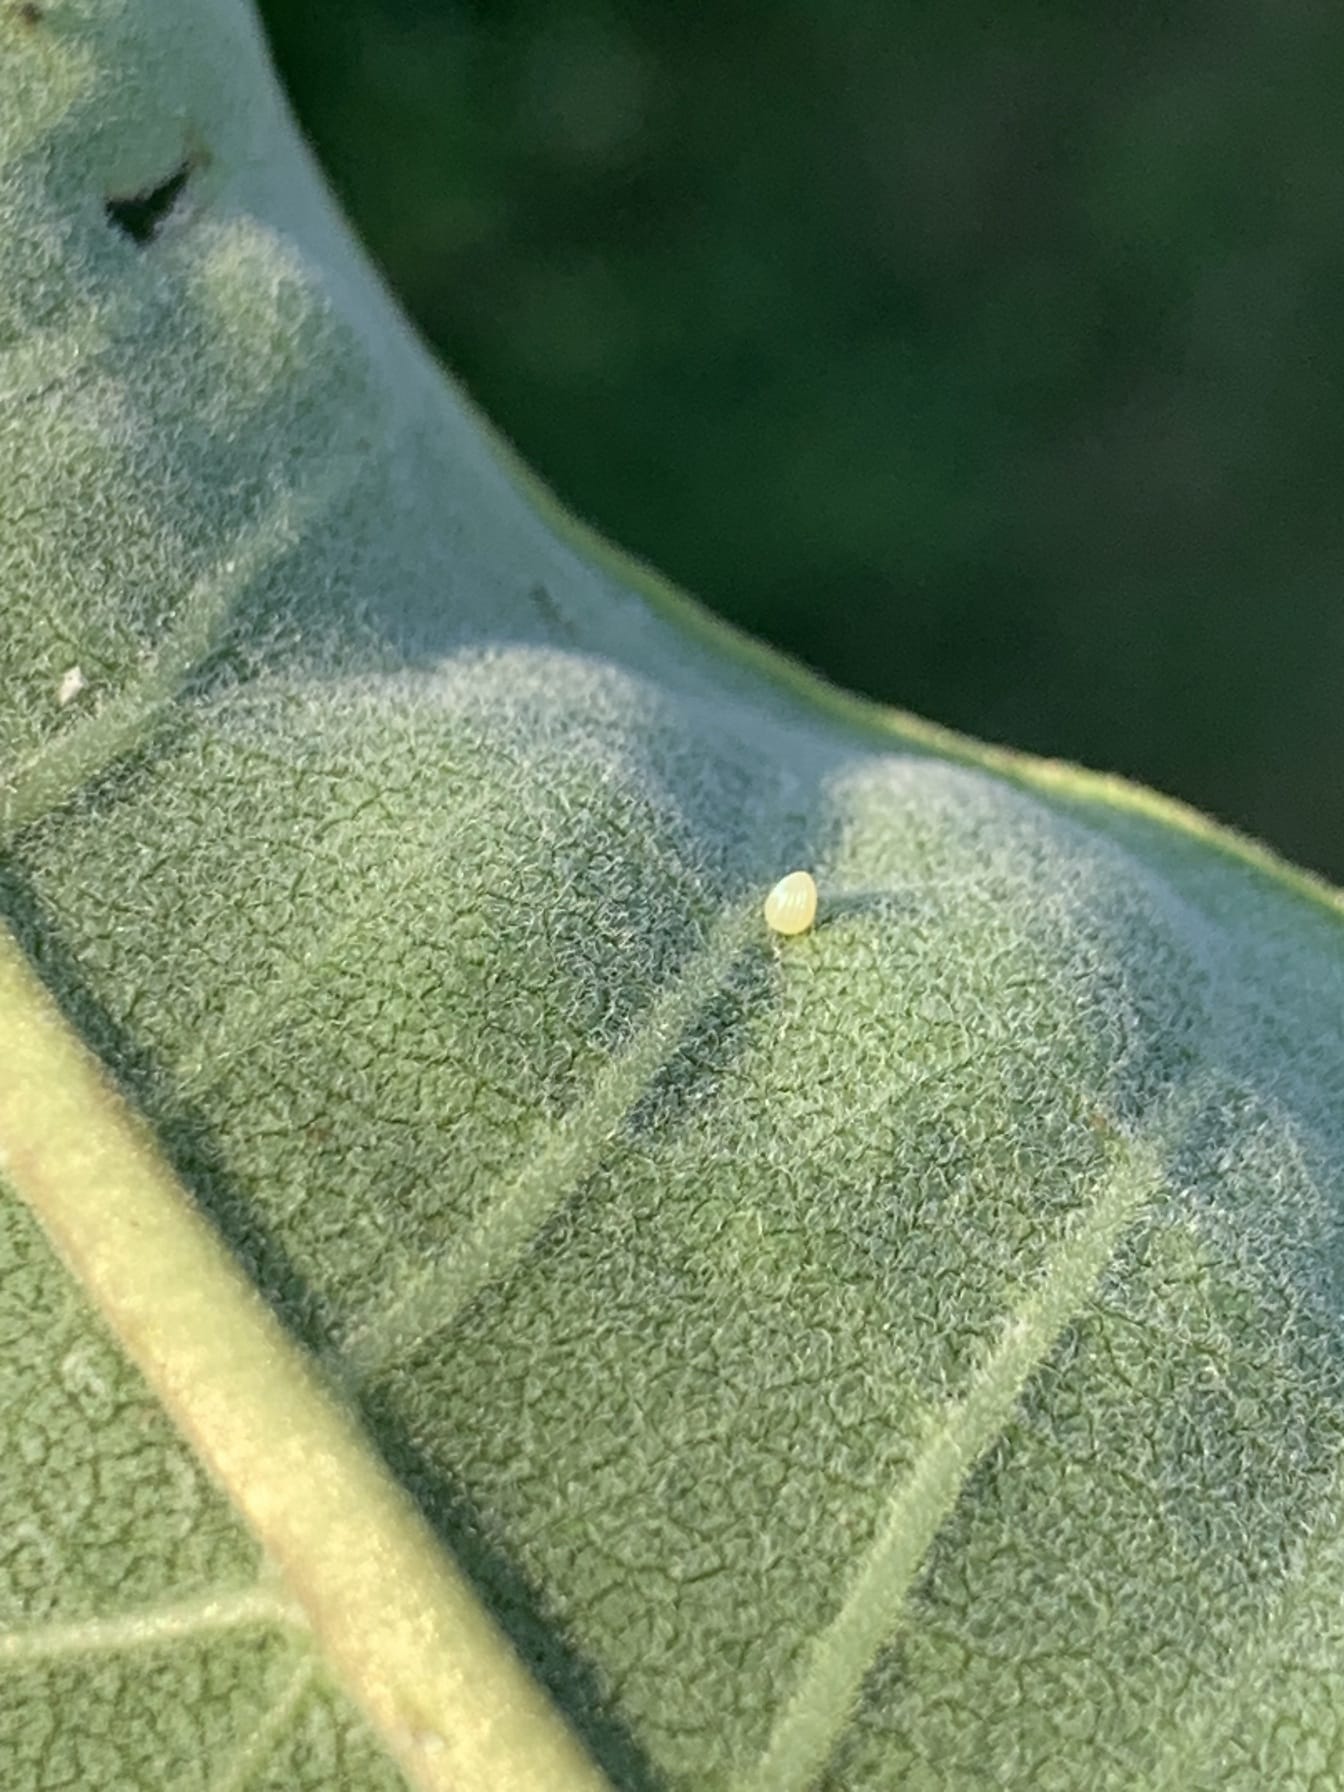 Telur kupu-kupu raja di belakang daun milkweed bentuk kerucut kuning sangat kecil